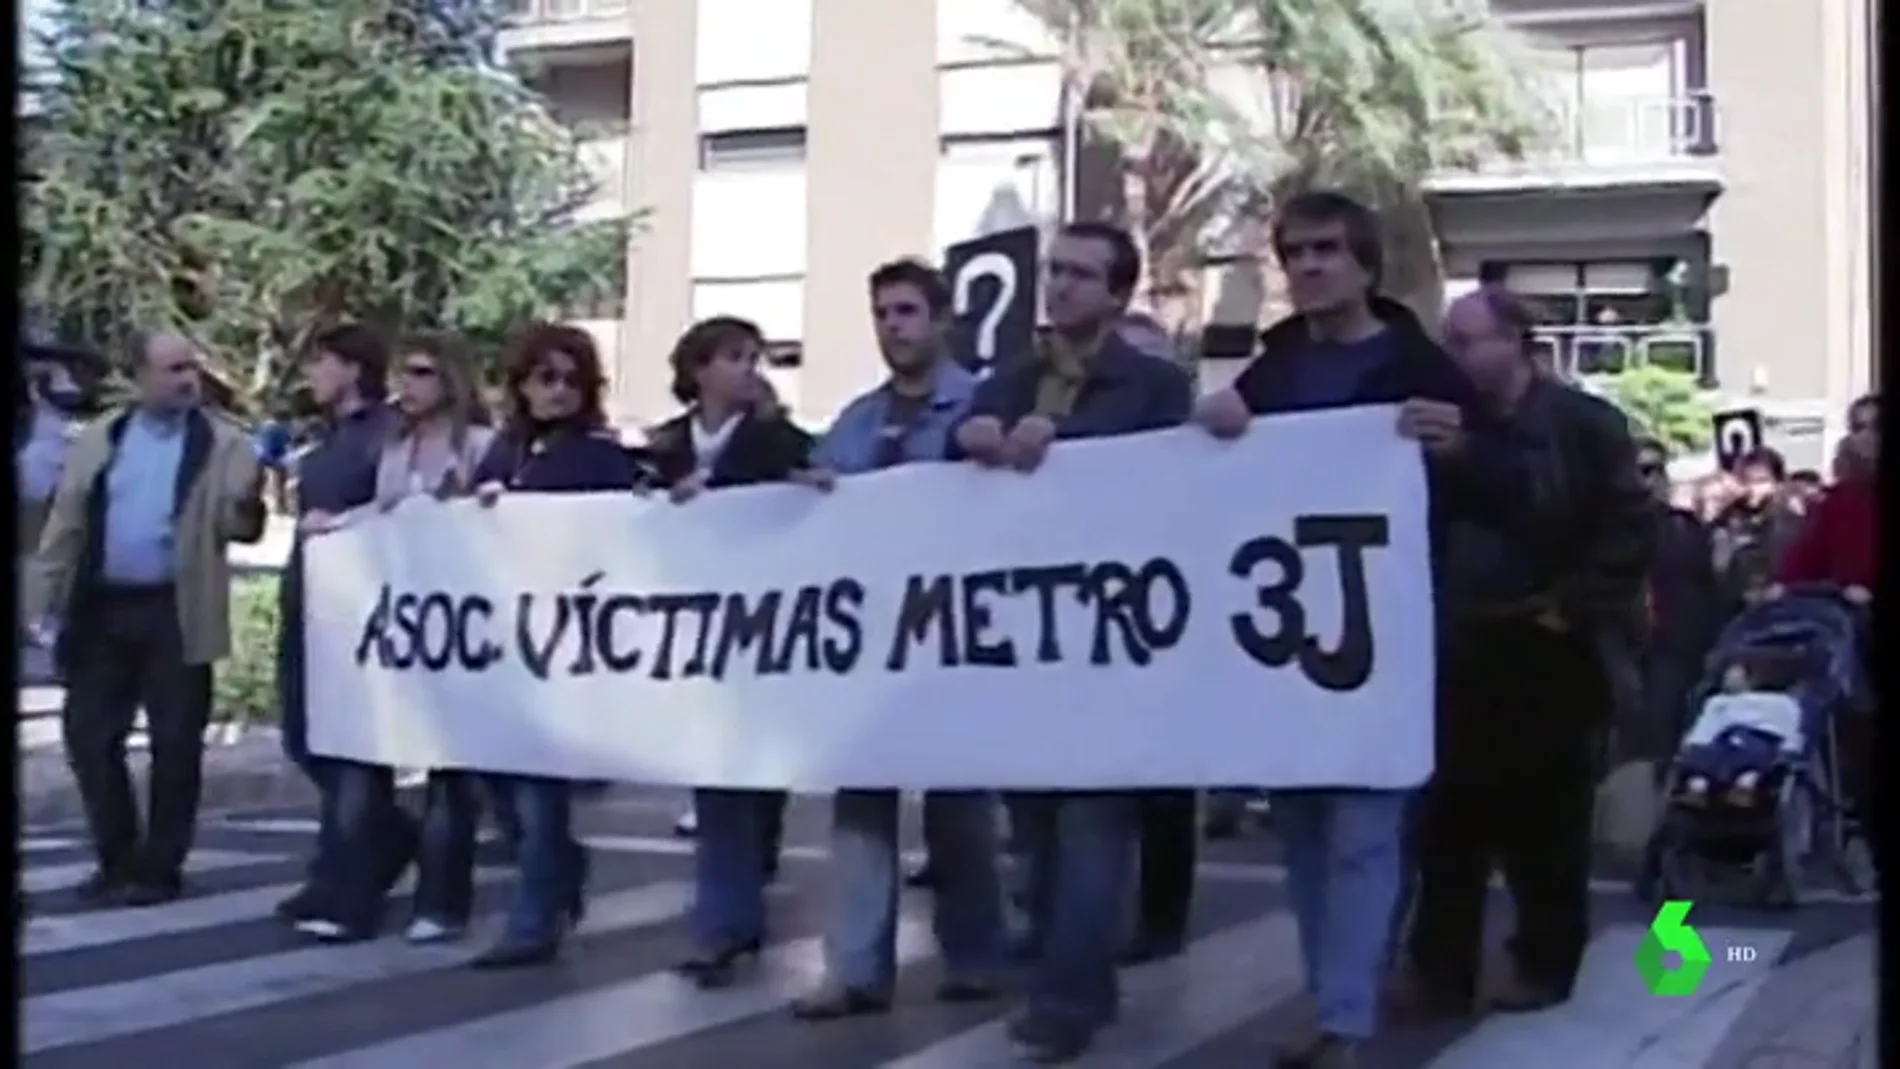 Justicia y verdad 13 años después de accidente del metro de Valencia: así alzaron la voz las víctimas de la tragedia para no caer en el olvido